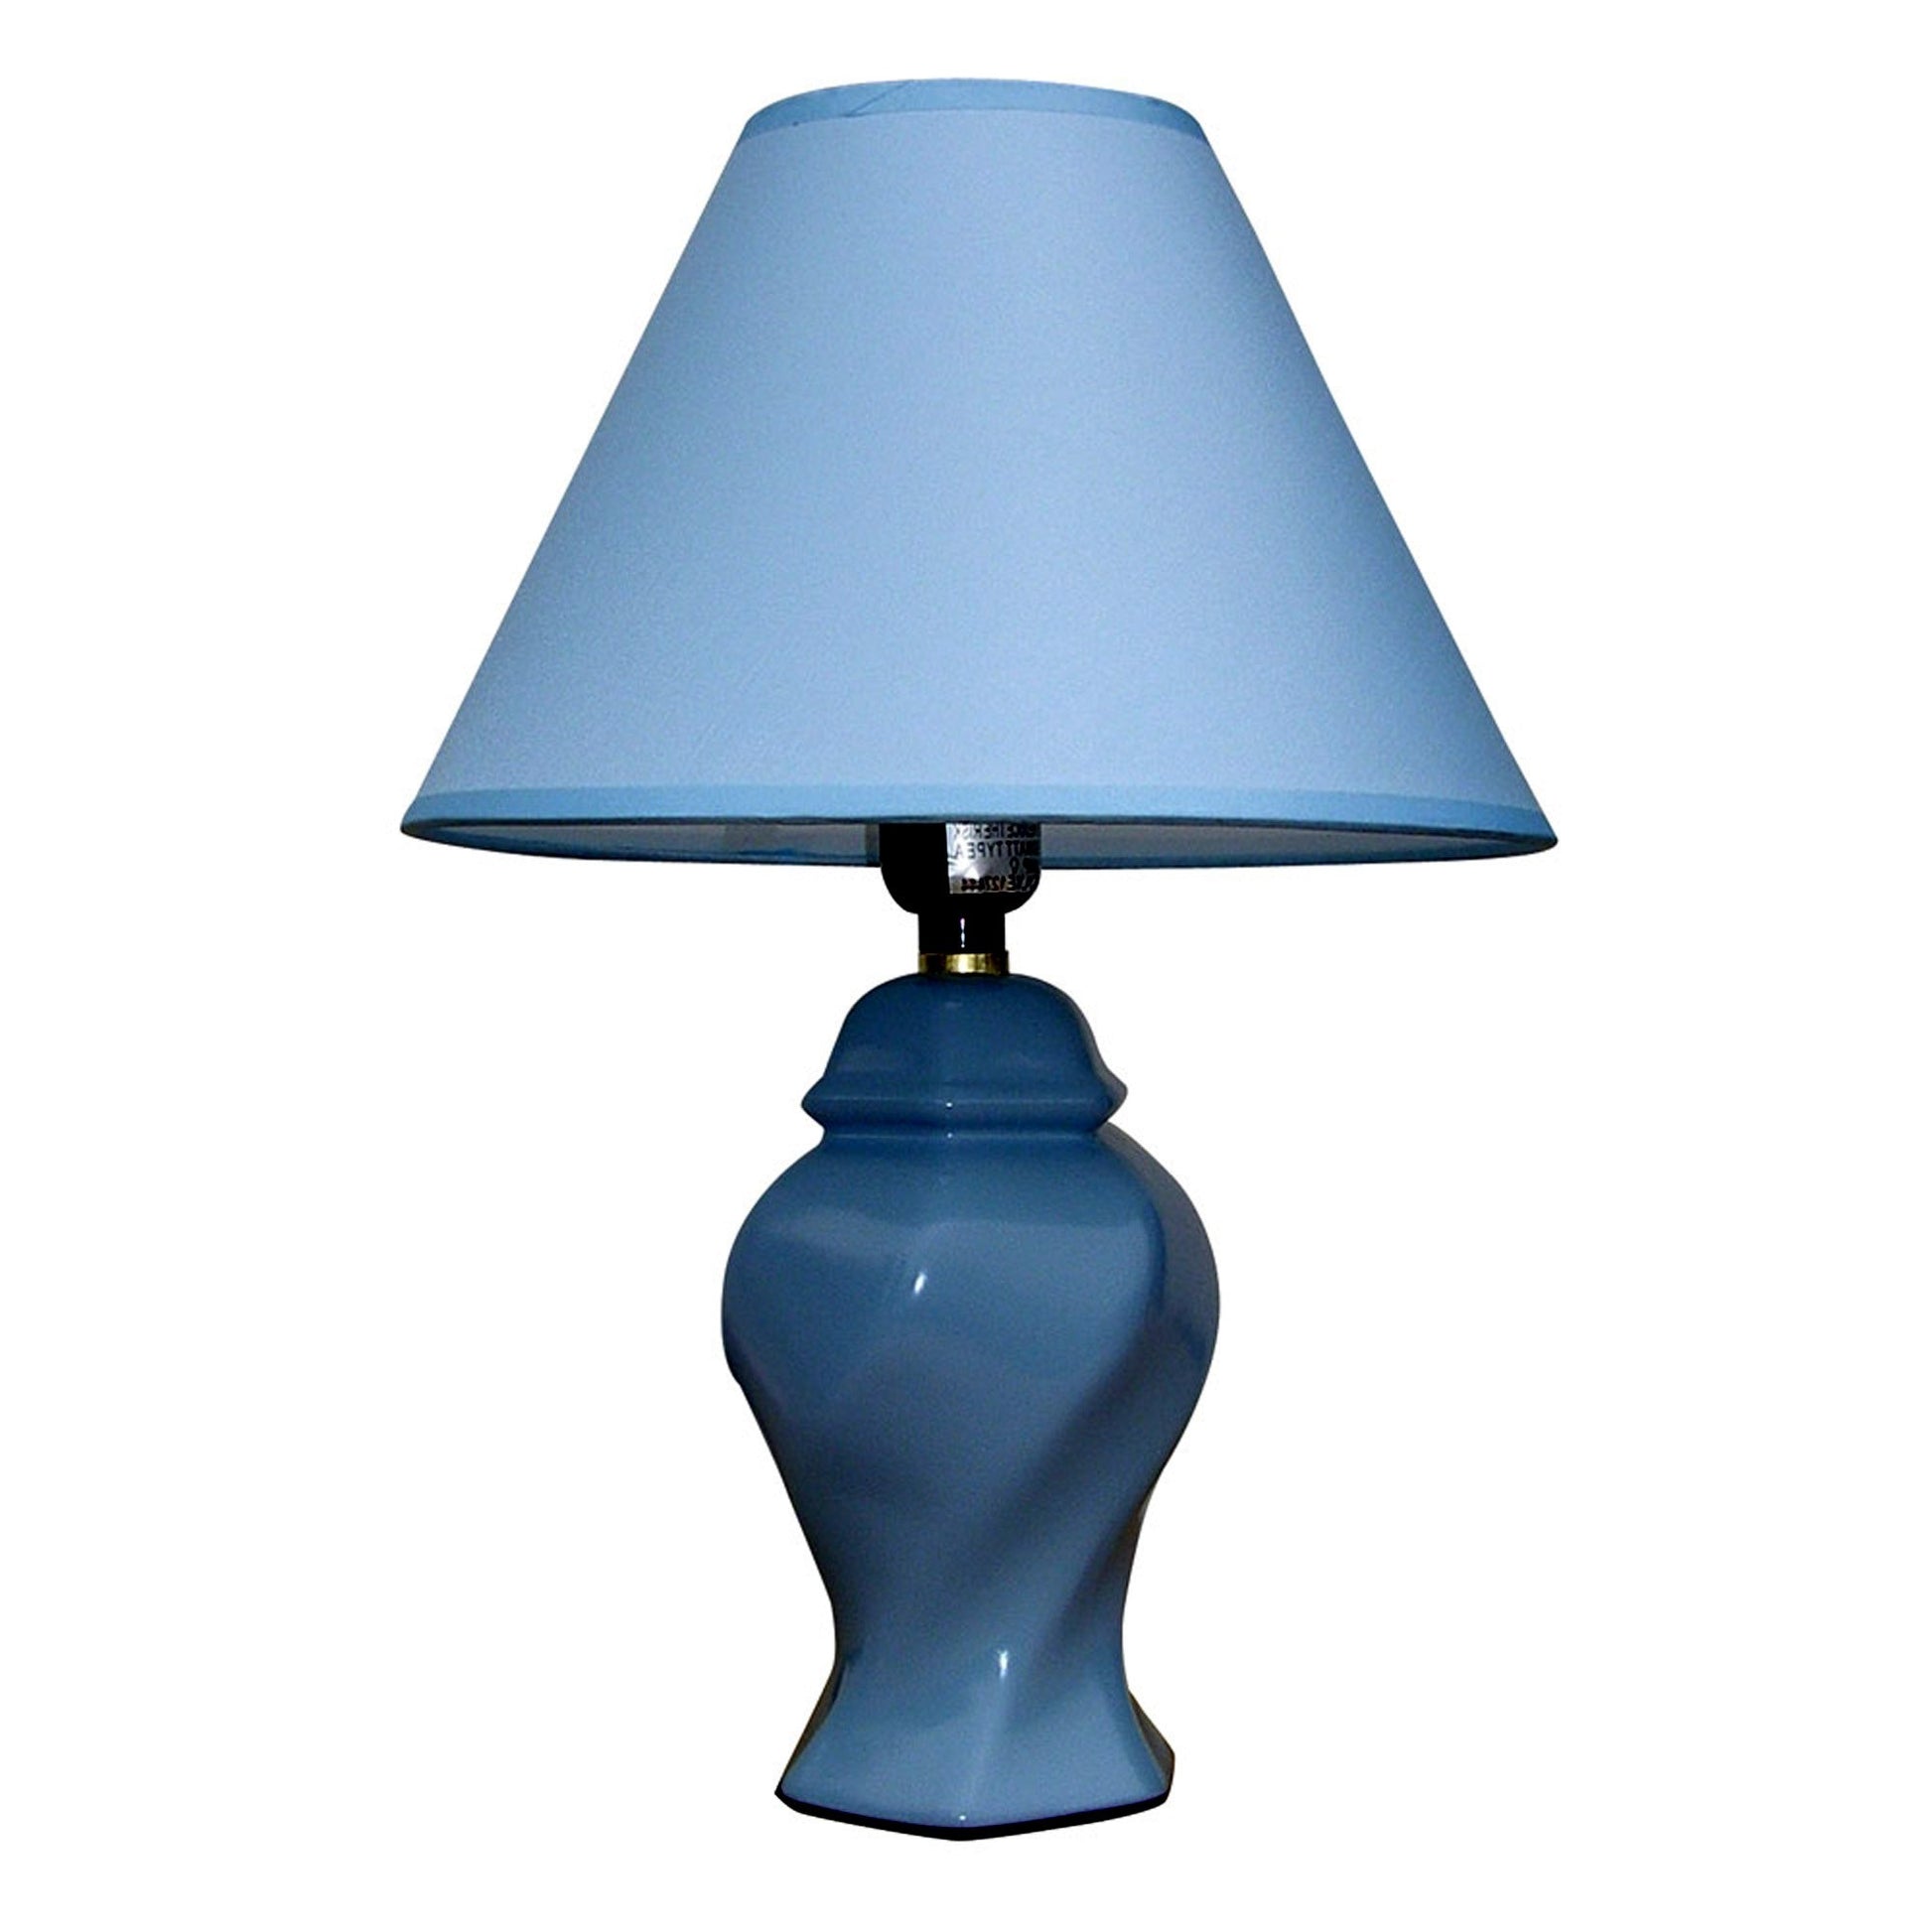 Black Urn Shaped Table Lamp | Table Lamps | Modishstore - 6